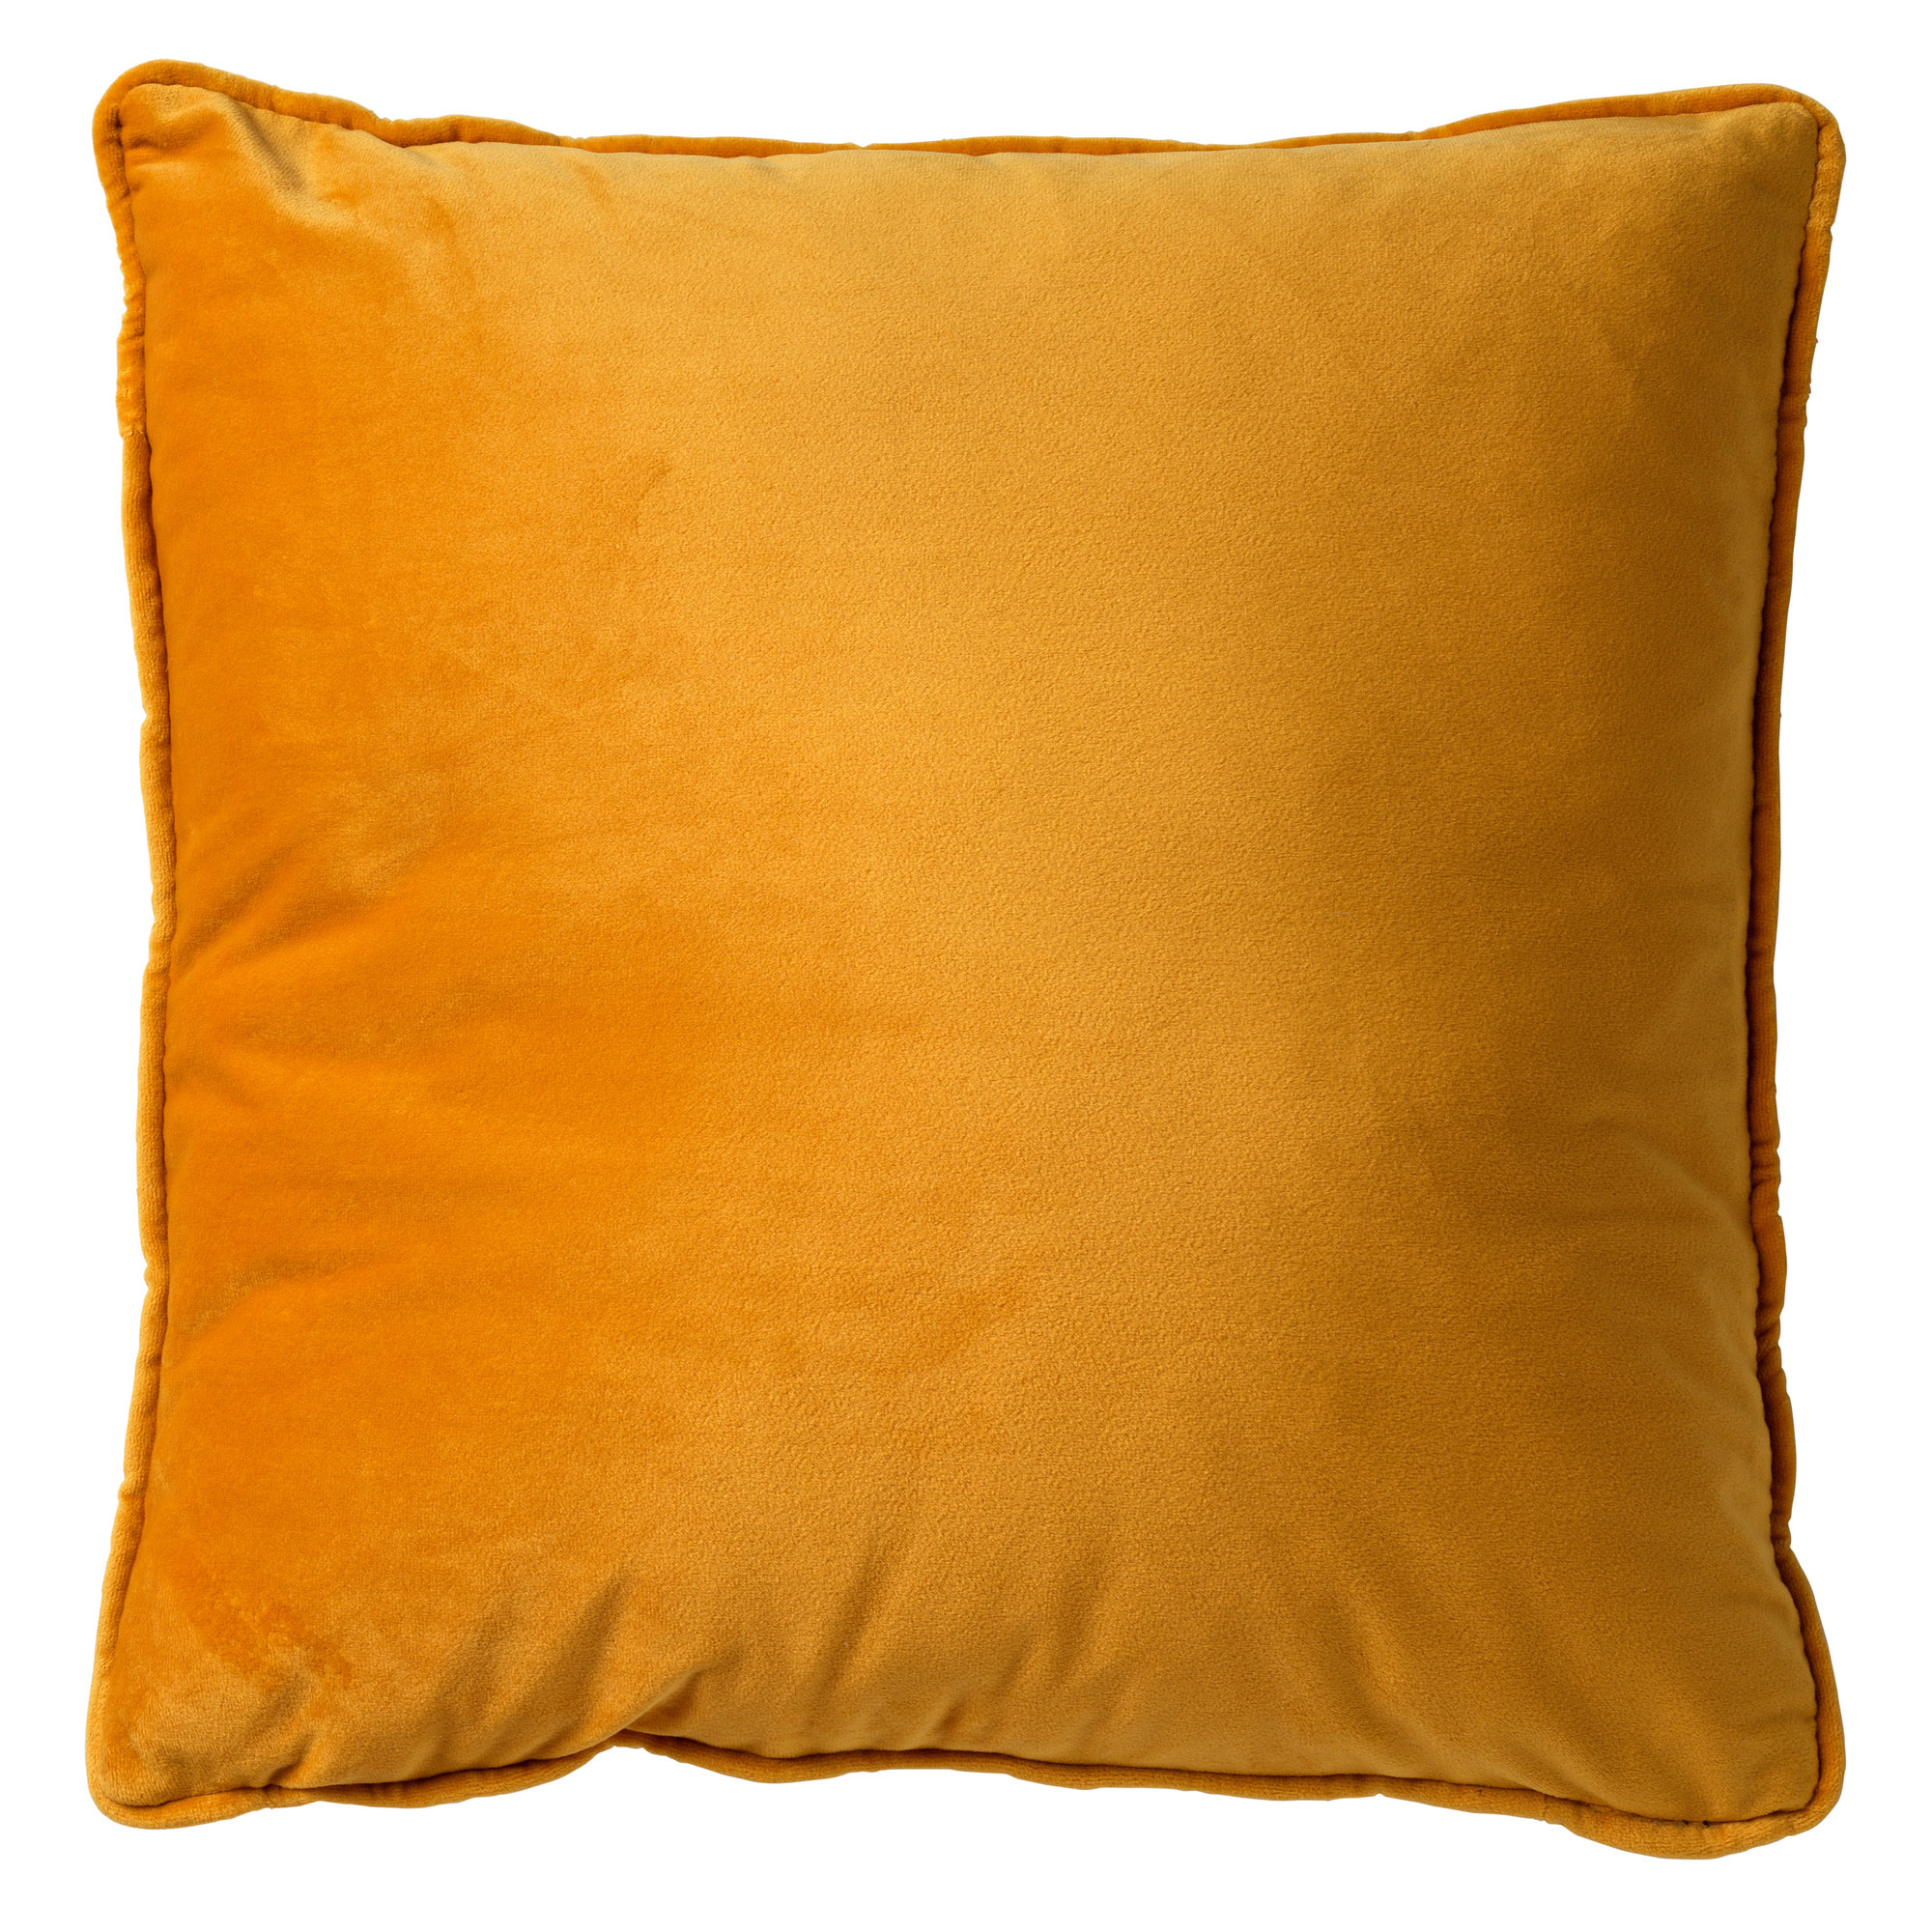 FINNA - Coussin 45x45 cm avec housse de coussin en 100% polyester recyclé - Eco Line collection - Golden Glow - jaune